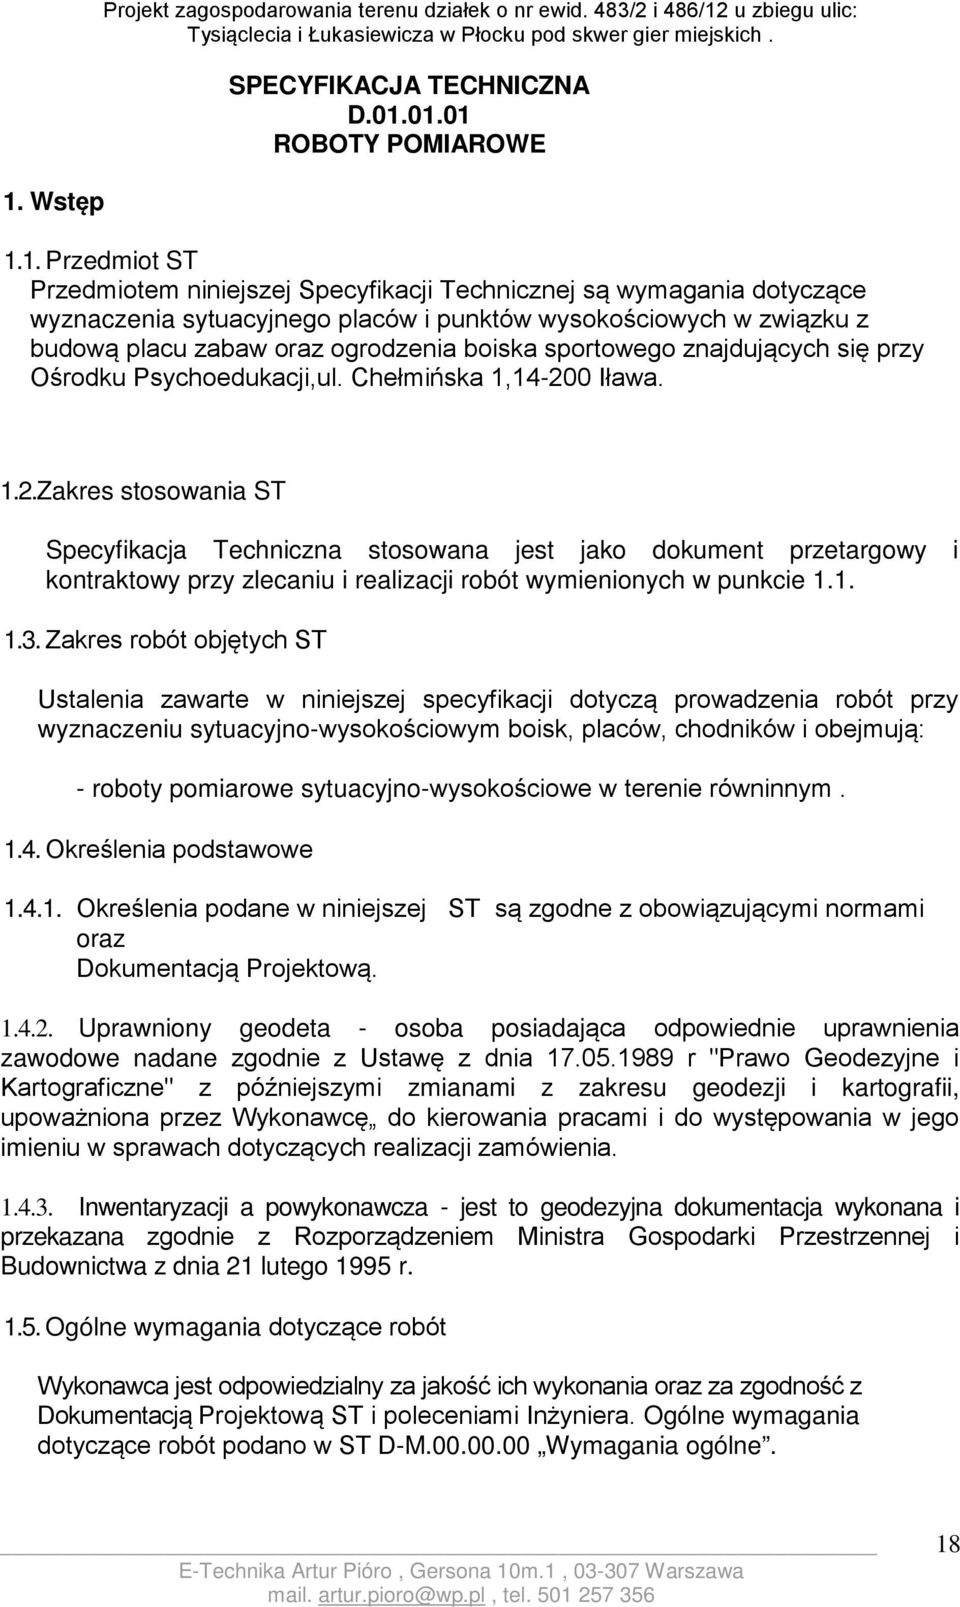 Psychoedukacji,ul. Chełmińska 1,14-200 Iława. 1.2.Zakres stosowania ST Specyfikacja Techniczna stosowana jest jako dokument przetargowy i kontraktowy przy zlecaniu i realizacji robót wymienionych w punkcie 1.